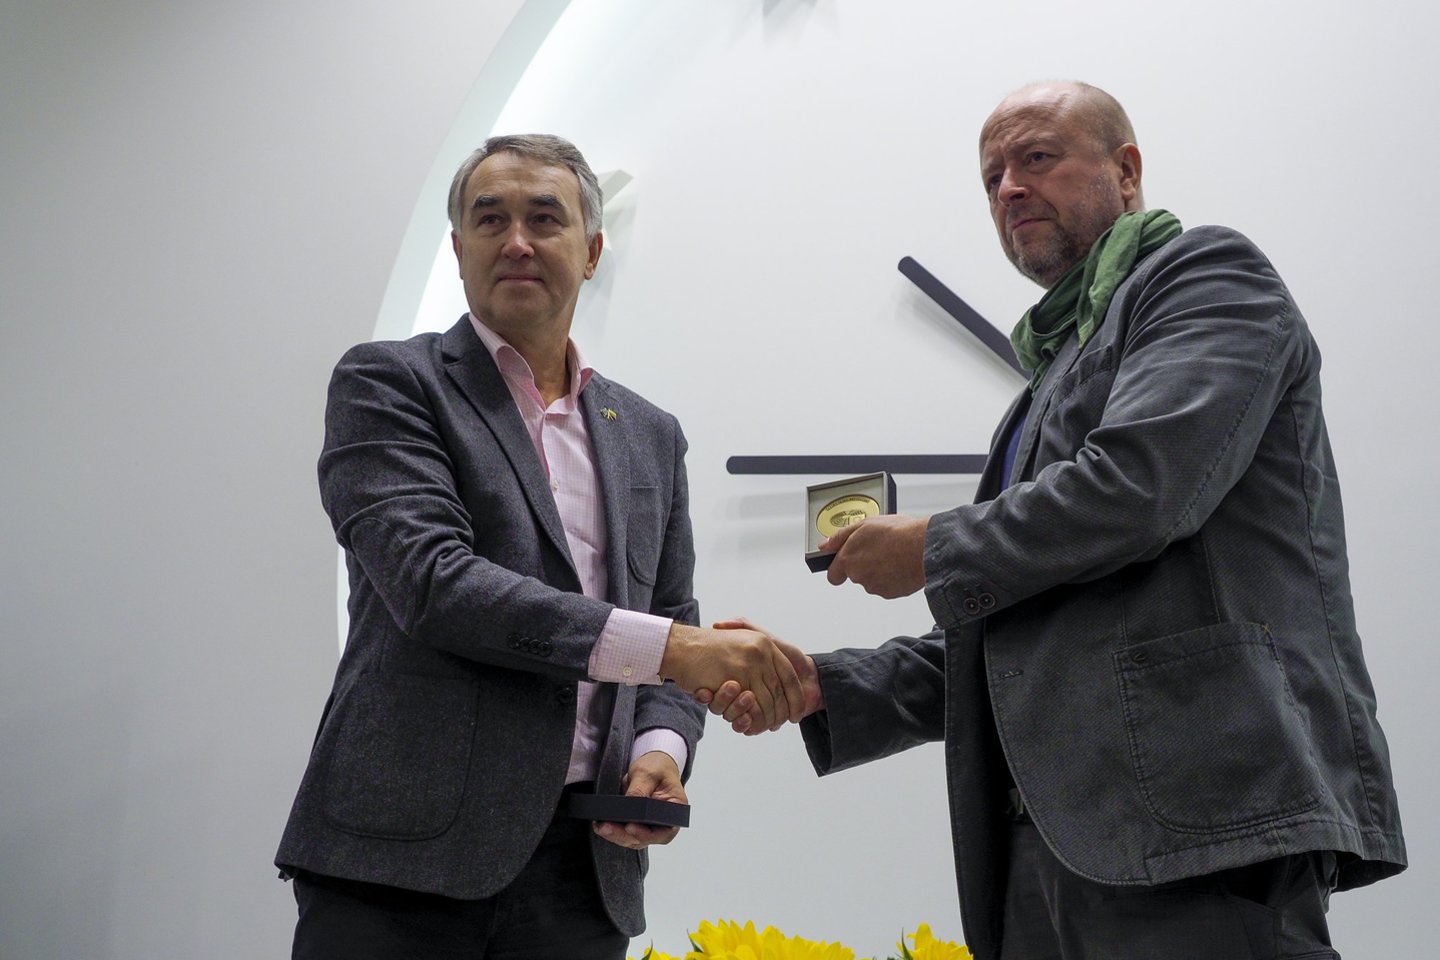 Europos namuose Vilniuje organizacijai „Blue/Yellow“ įteiktas Europos piliečio apdovanojimas.<br>V.Ščiavinsko nuotr.